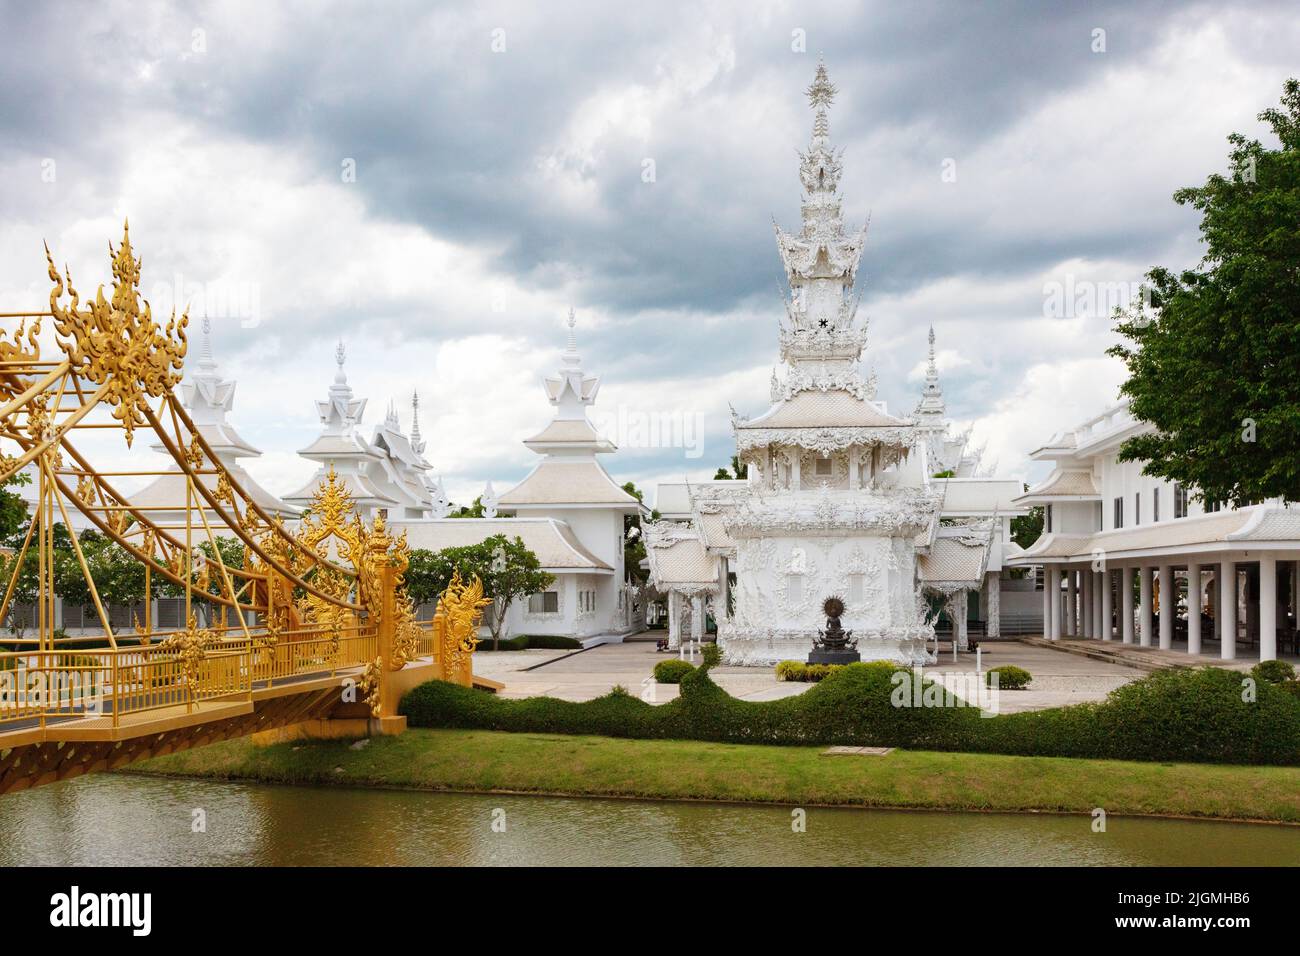 El moderno Wat Rong Khun o TEMPLO BLANCO construido por el artista Chalermachai Kositpipat es hindú y budista - CHIANG Rai, TAILANDIA Foto de stock